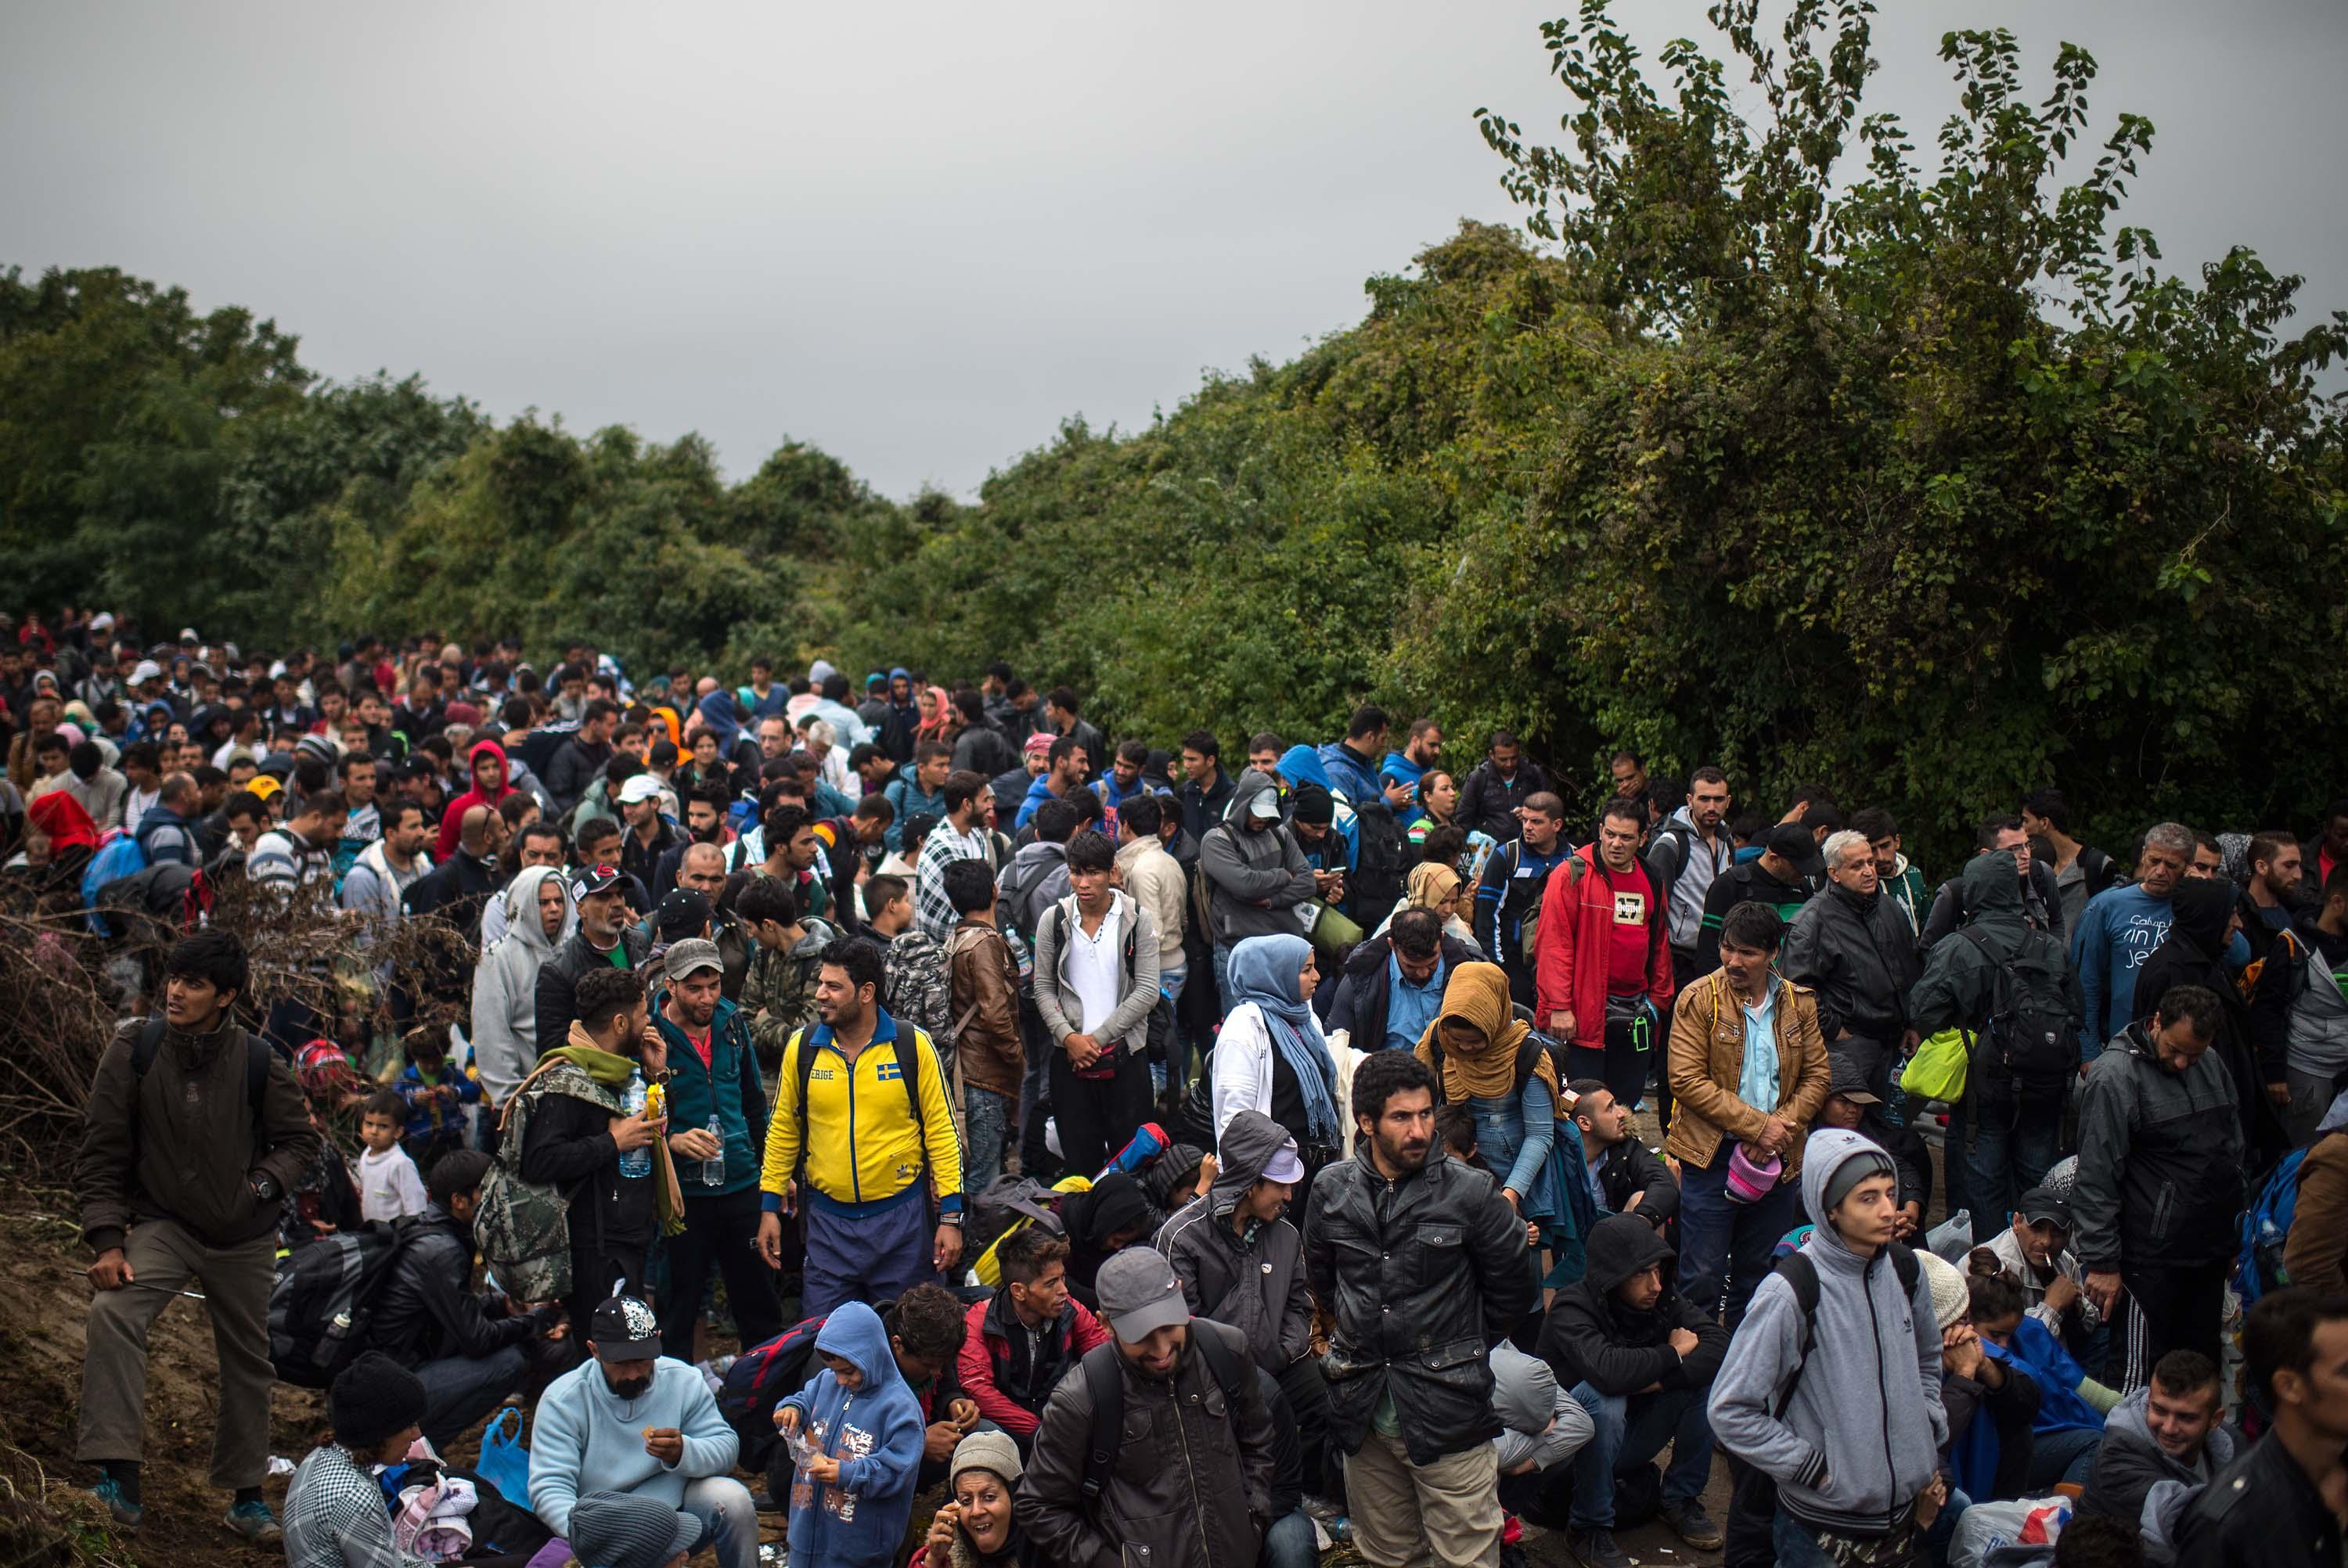 40 000 flyktingars har korsat gränsen mellan Serbien och Kroatien senaste veckan Sedan länderna längs den västra Balkanrutten börjat begränsa insläppet av flyktingar har en propp bildats.(Foto: David Ramos/Getty Images)